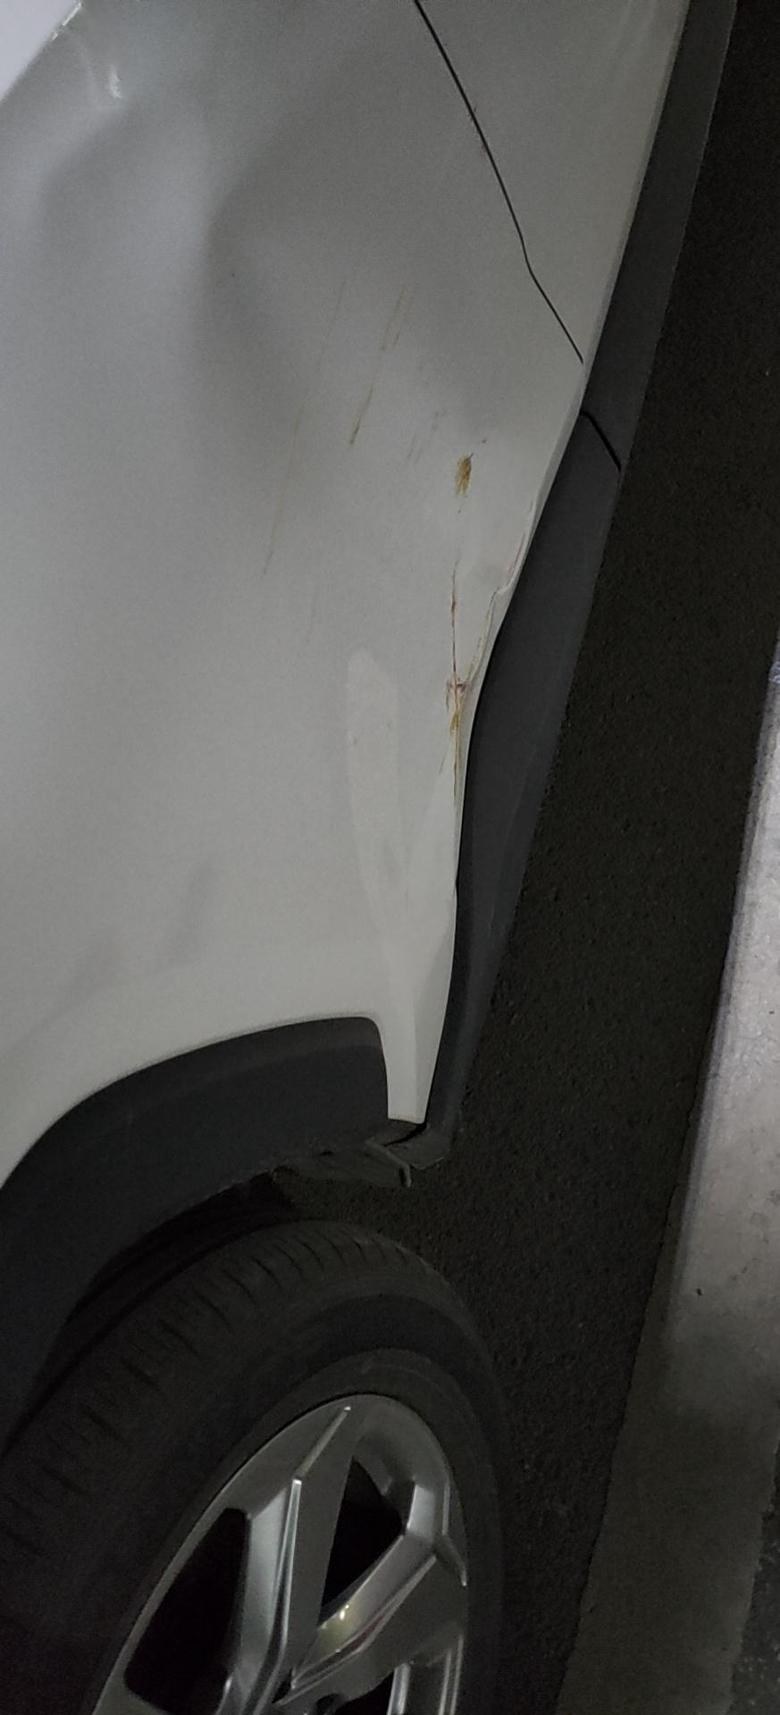 rav4荣放 停车的时候，旁边有个柱子，撞上了，后车门整个砸进去了。。。修理的话大概多少钱？或者还是直接换个车门？